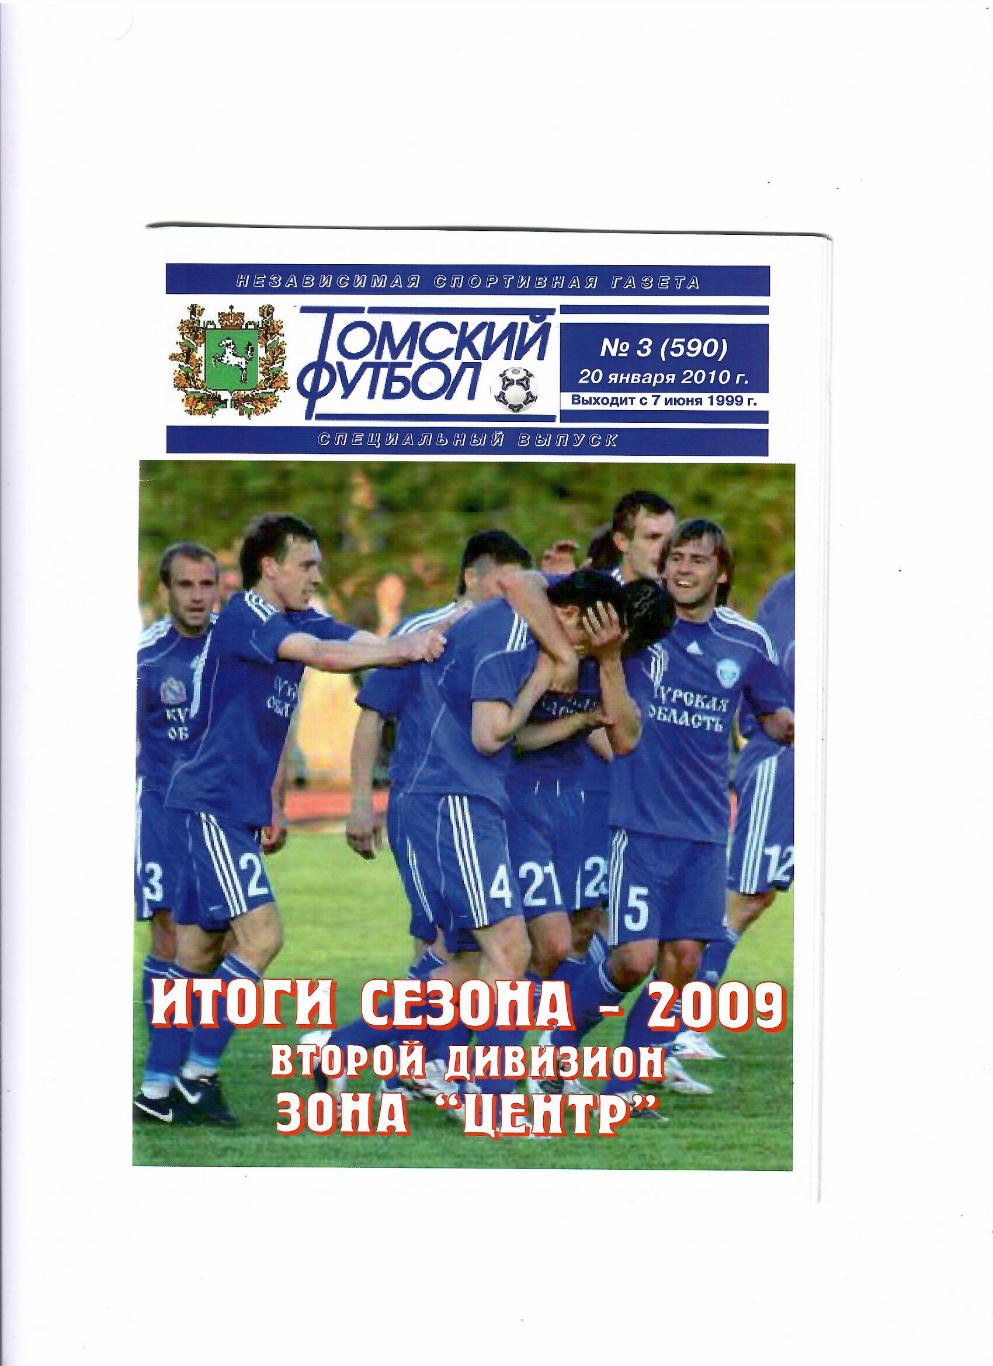 Томский футбол 2010 № 3 зона Центр